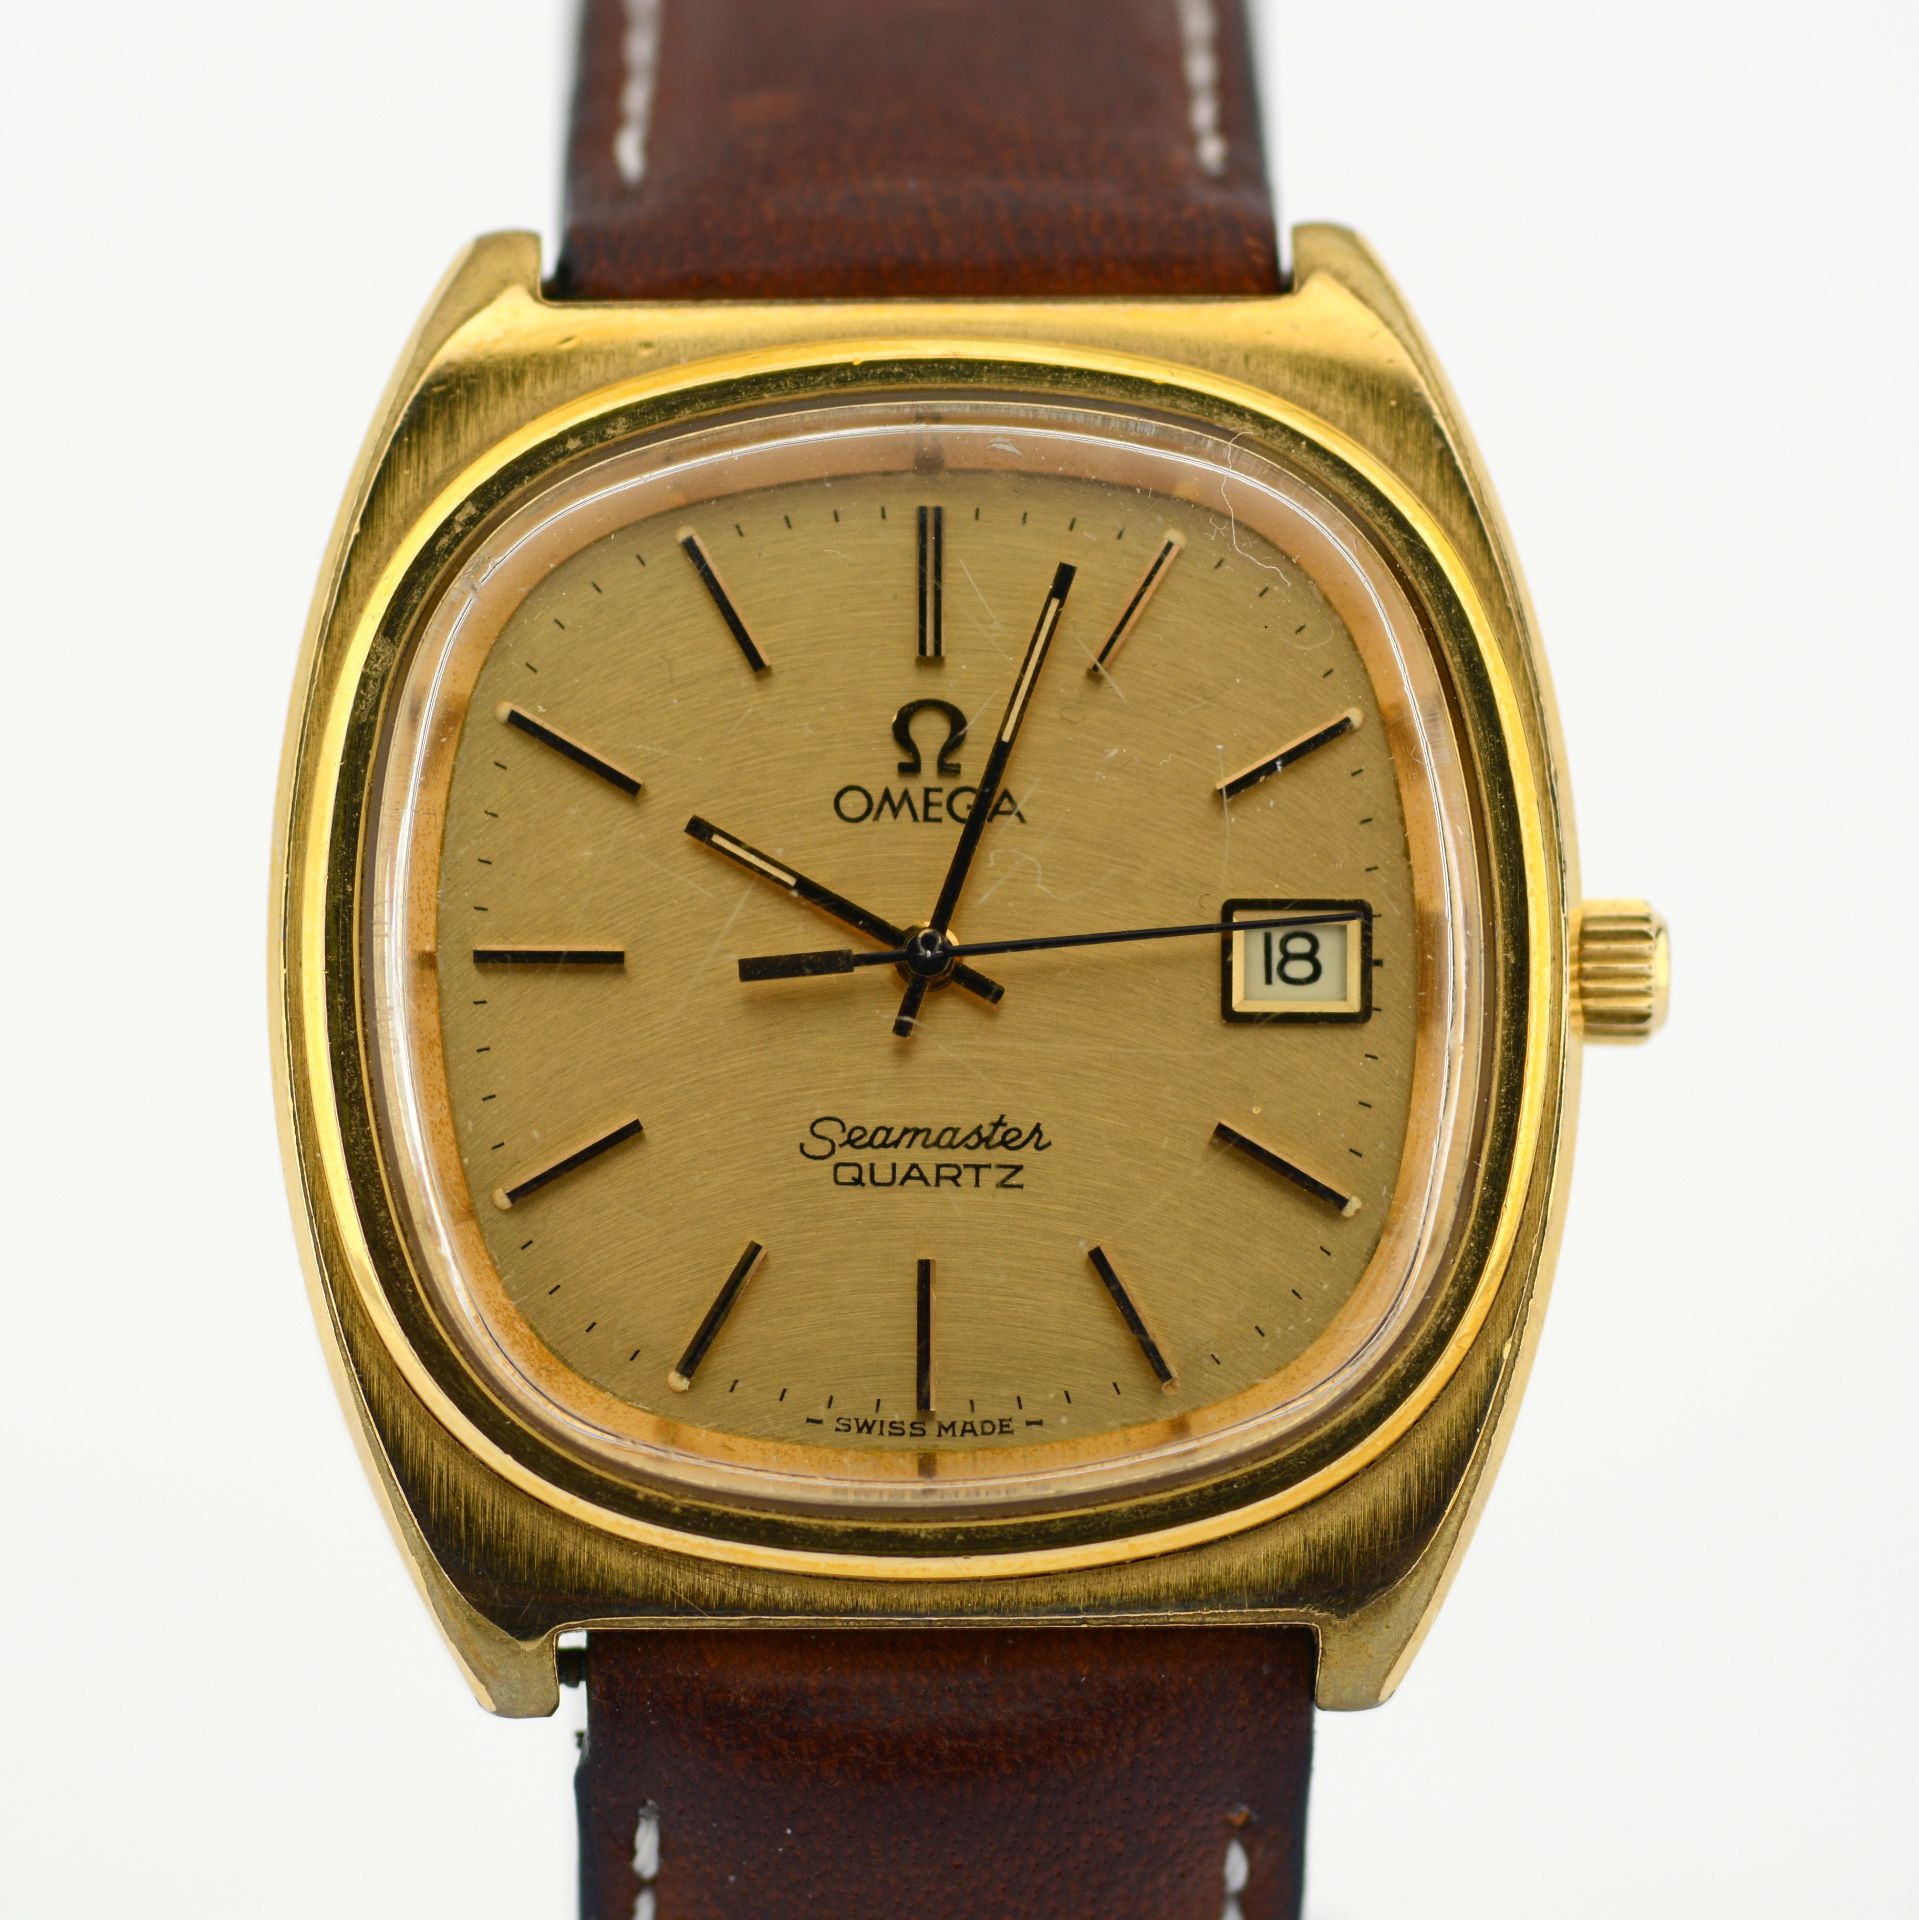 Omega / Seamaster Date - Gentlmen's Steel Wrist Watch - Image 6 of 6